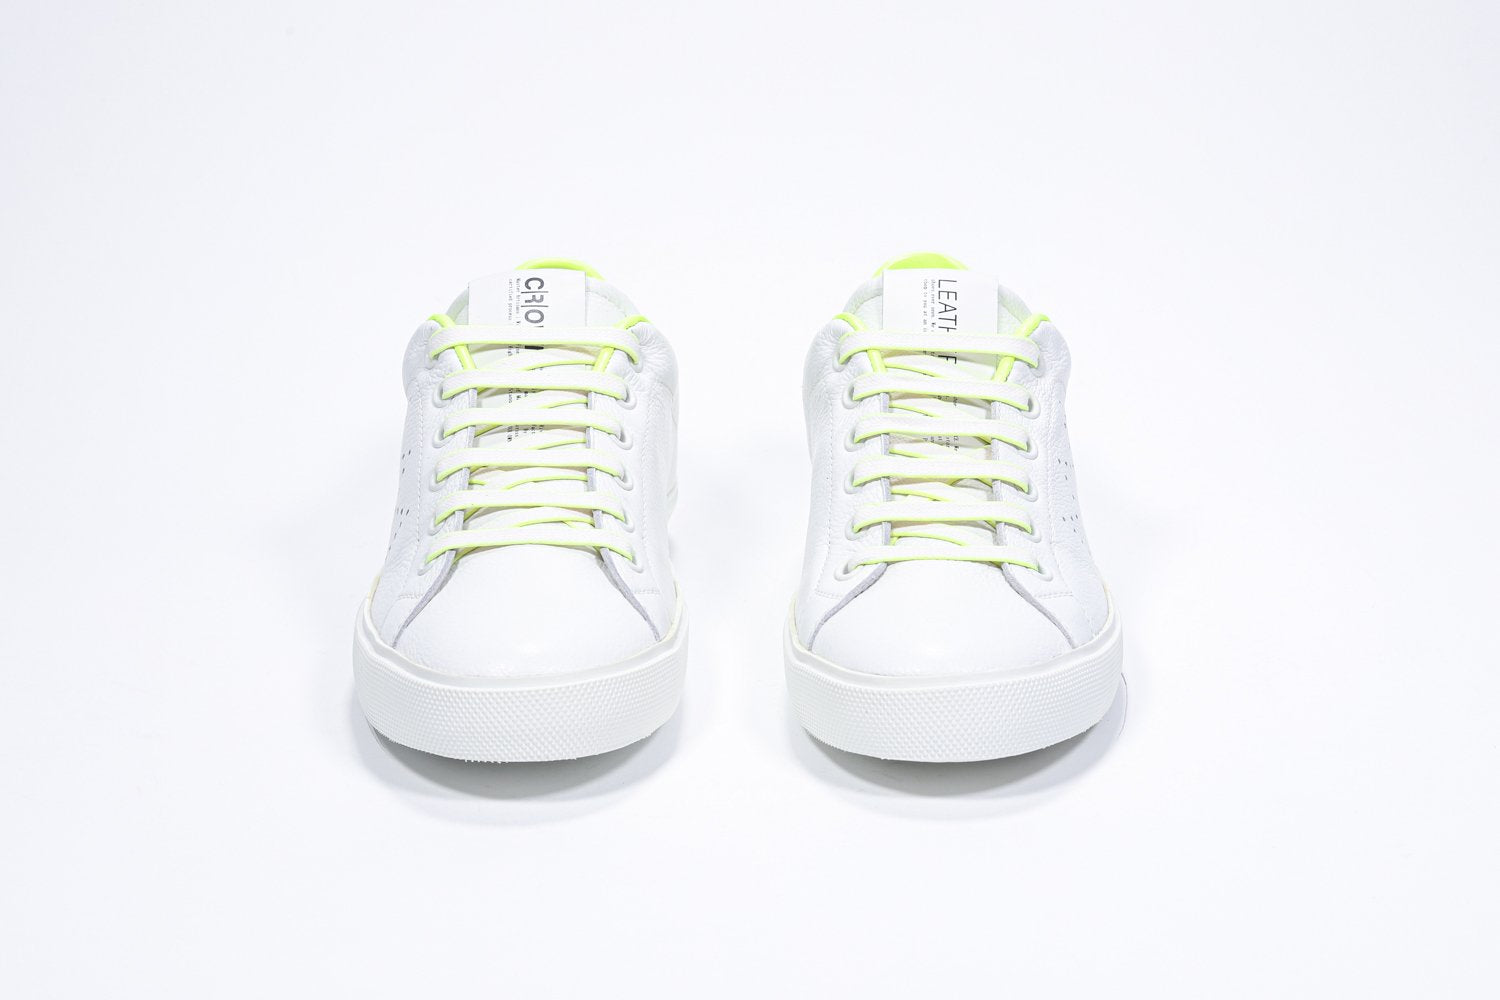 Vorderansicht des weißen Low Top sneaker mit neongelben Details und perforiertem Kronenlogo auf dem Obermaterial. Obermaterial aus Vollleder und weiße Gummisohle.